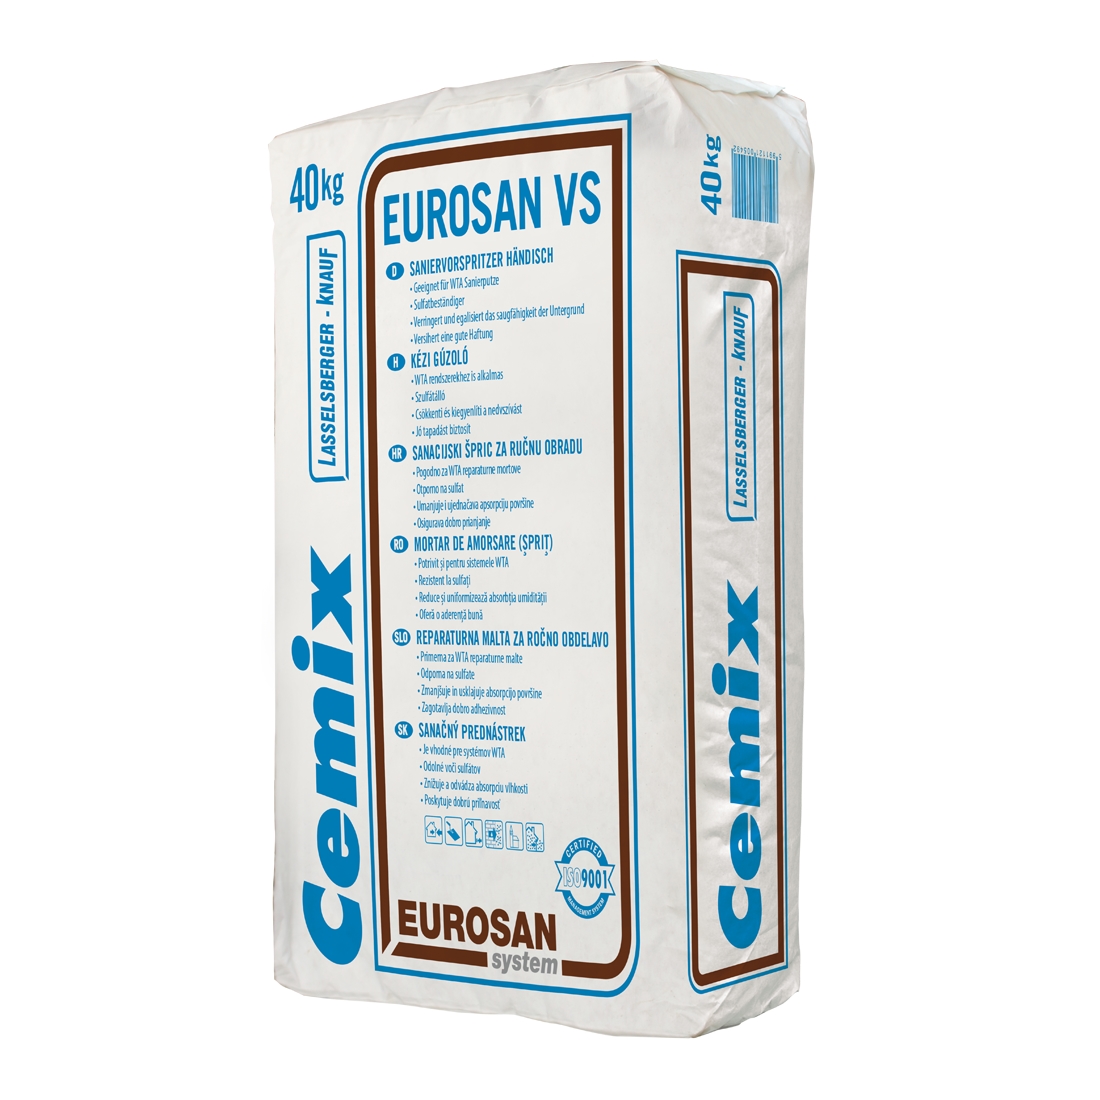 Sprit de amorsaj pe baza de ciment Cemix Eurosan VS